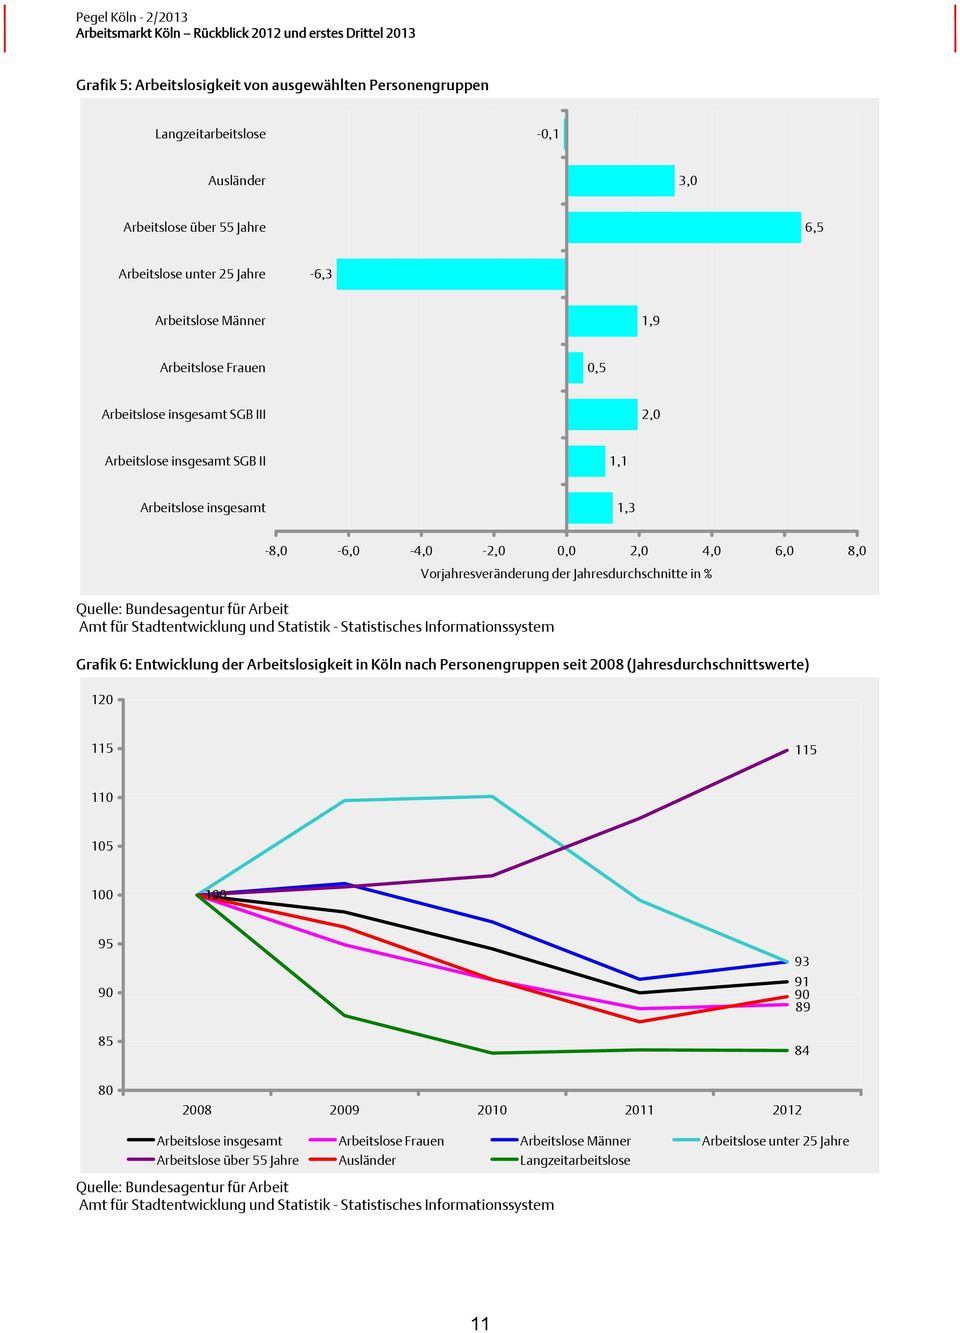 der Jahresdurchschnitte in % Grafik 6: Entwicklung der Arbeitslosigkeit in Köln nach Personengruppen seit 2008 (Jahresdurchschnittswerte) 120 115 115 110 105 100 100 95 90 85 93